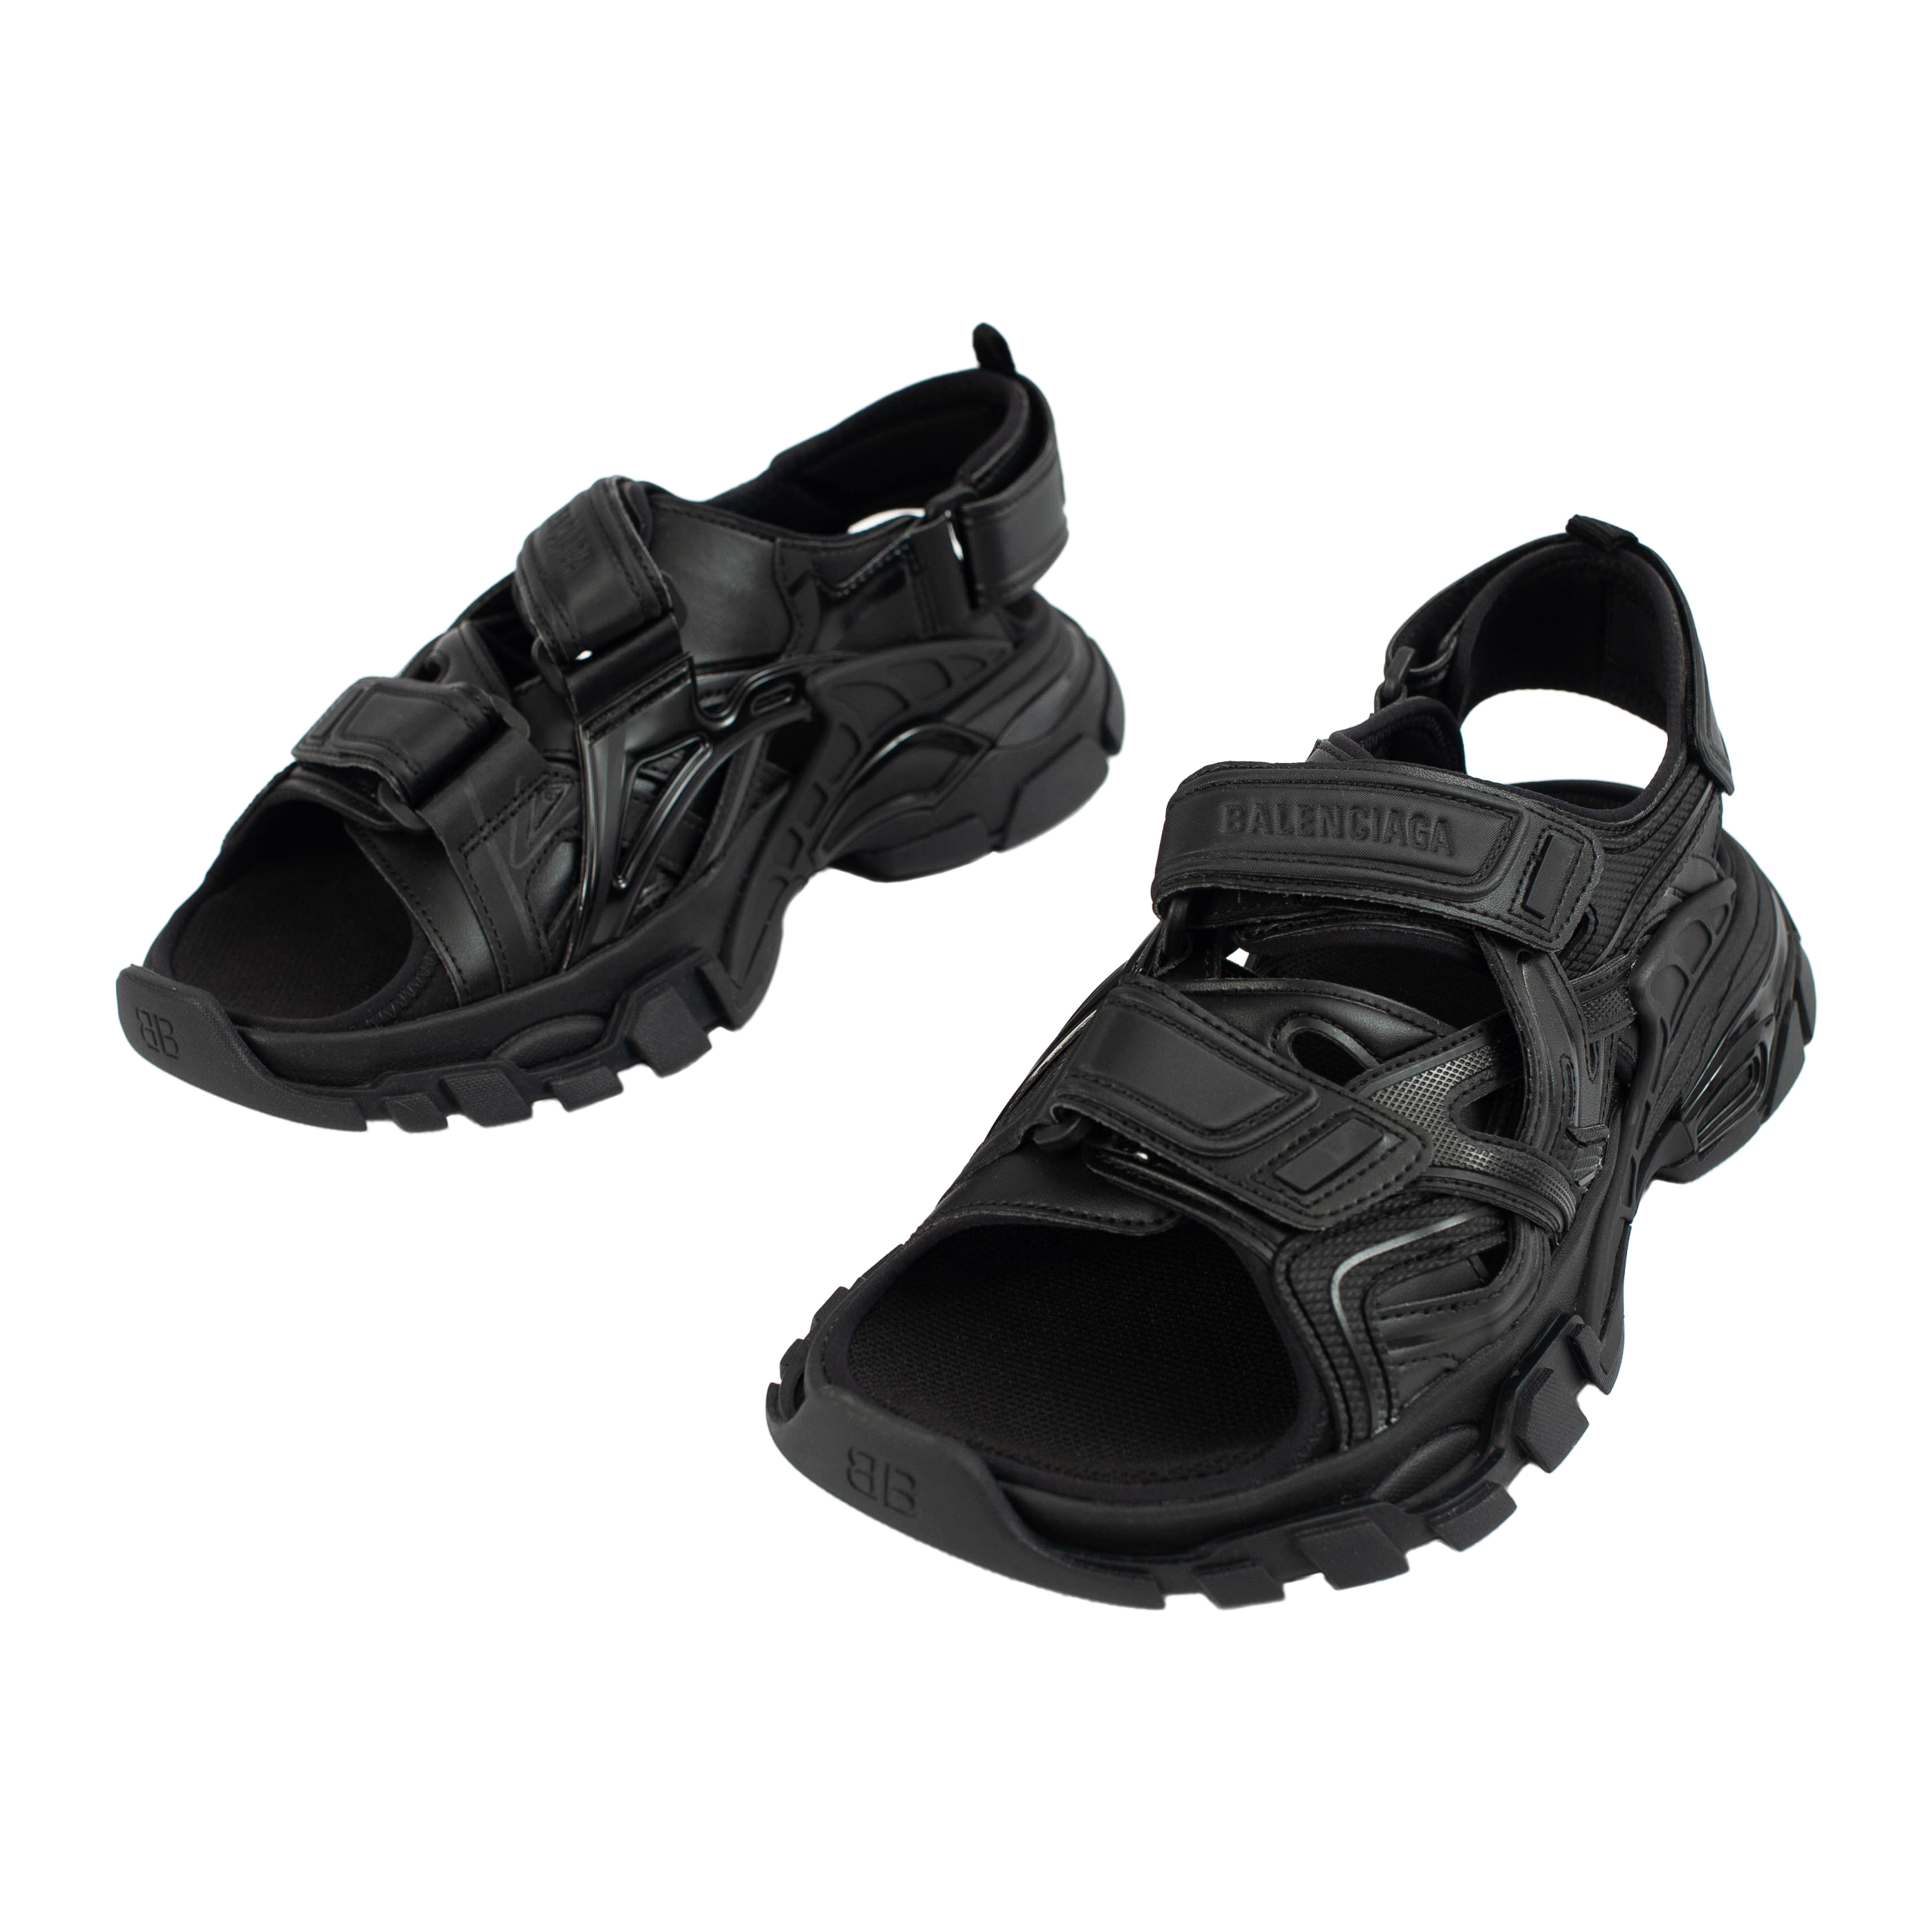 Черные сандалии Track на липучках Balenciaga 617543/W2CC1/1000, размер 37 617543/W2CC1/1000 - фото 2